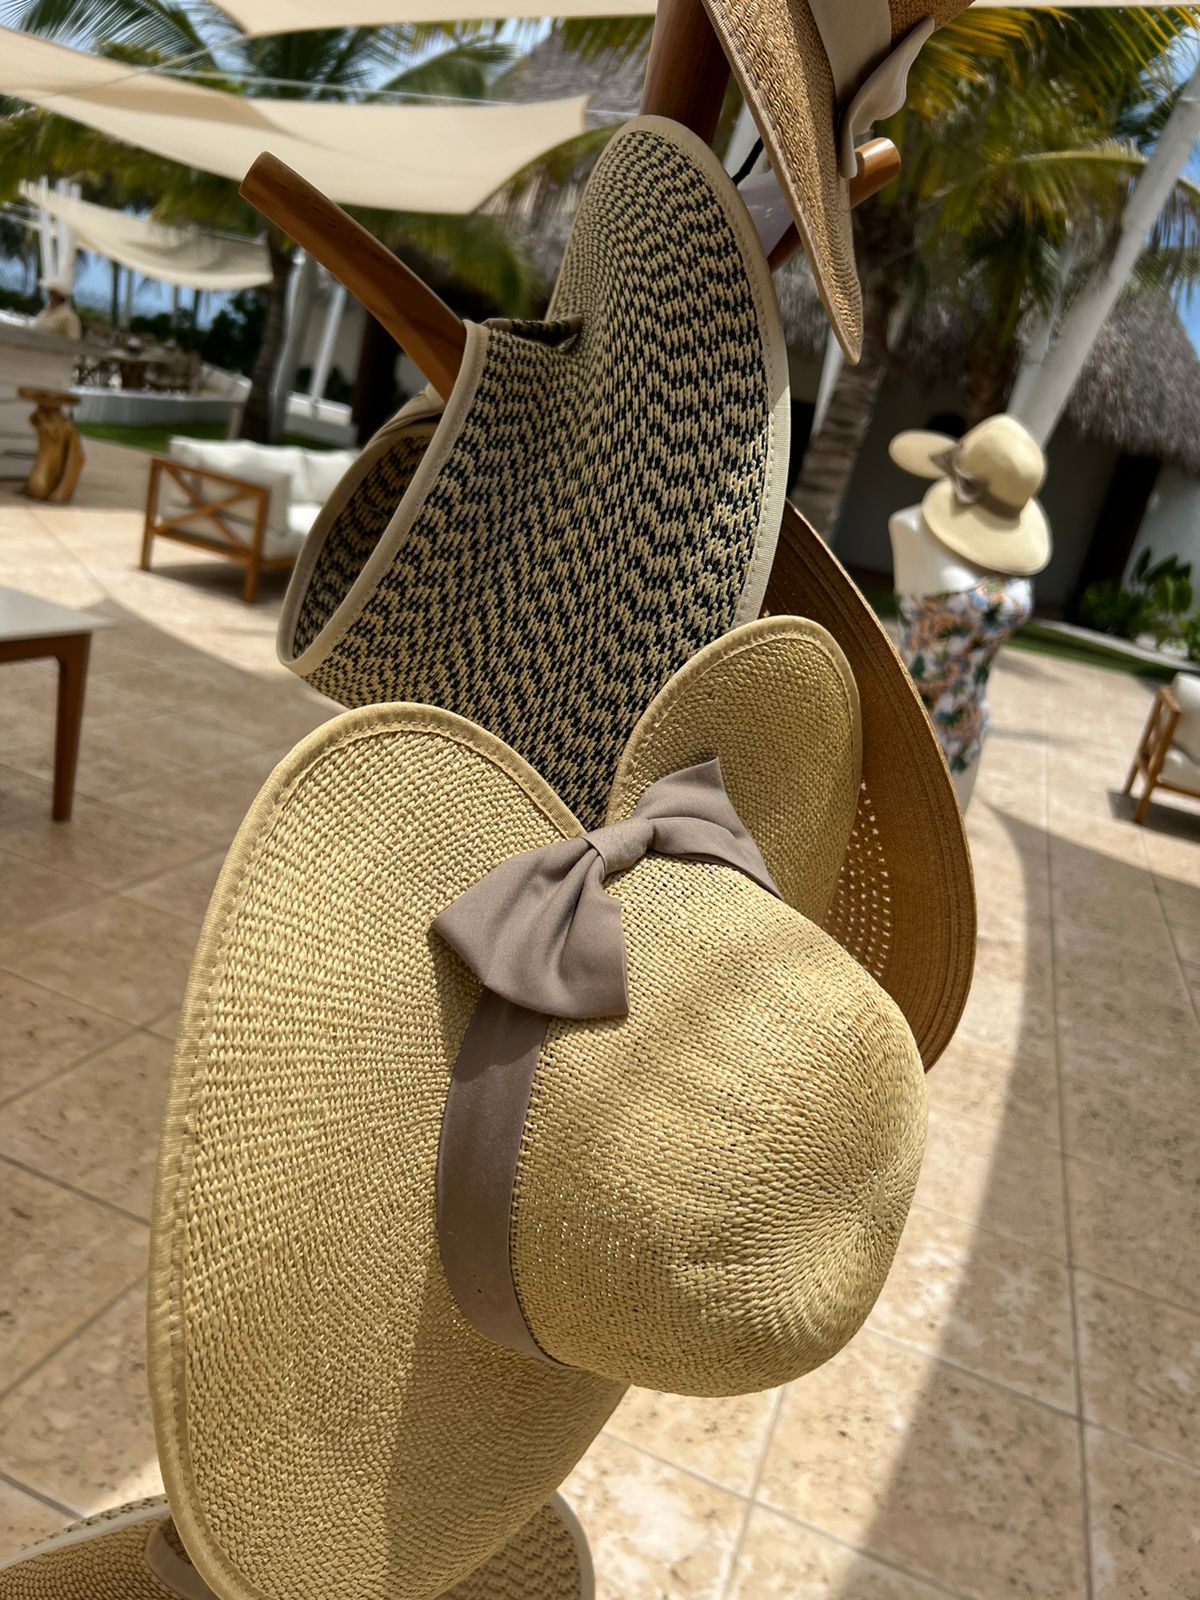 Sombrero de verano - Trenzado con moña NATURAL